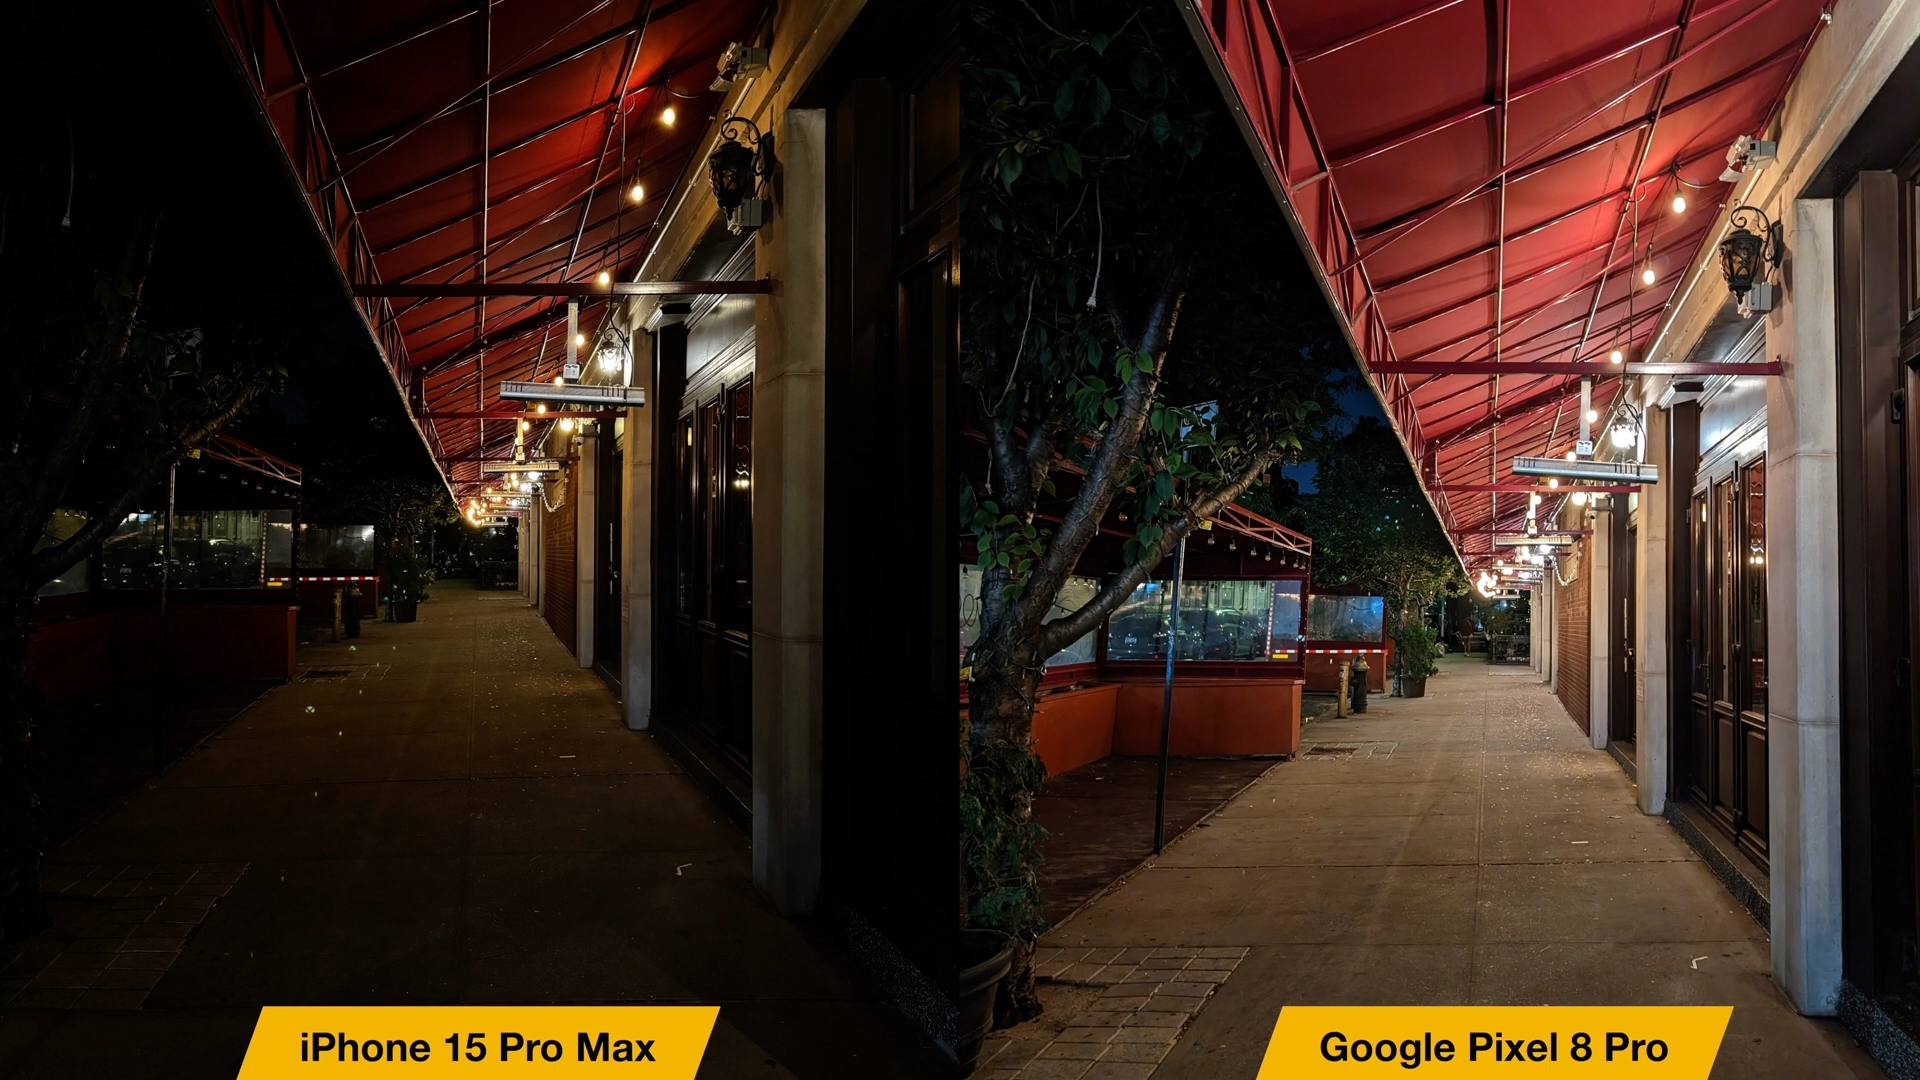 De iPhoneIslam.com, dos fotos de una calle con dos farolas, comparativa entre el iPhone 15 Pro Max y el Google Pixel 8 Pro.